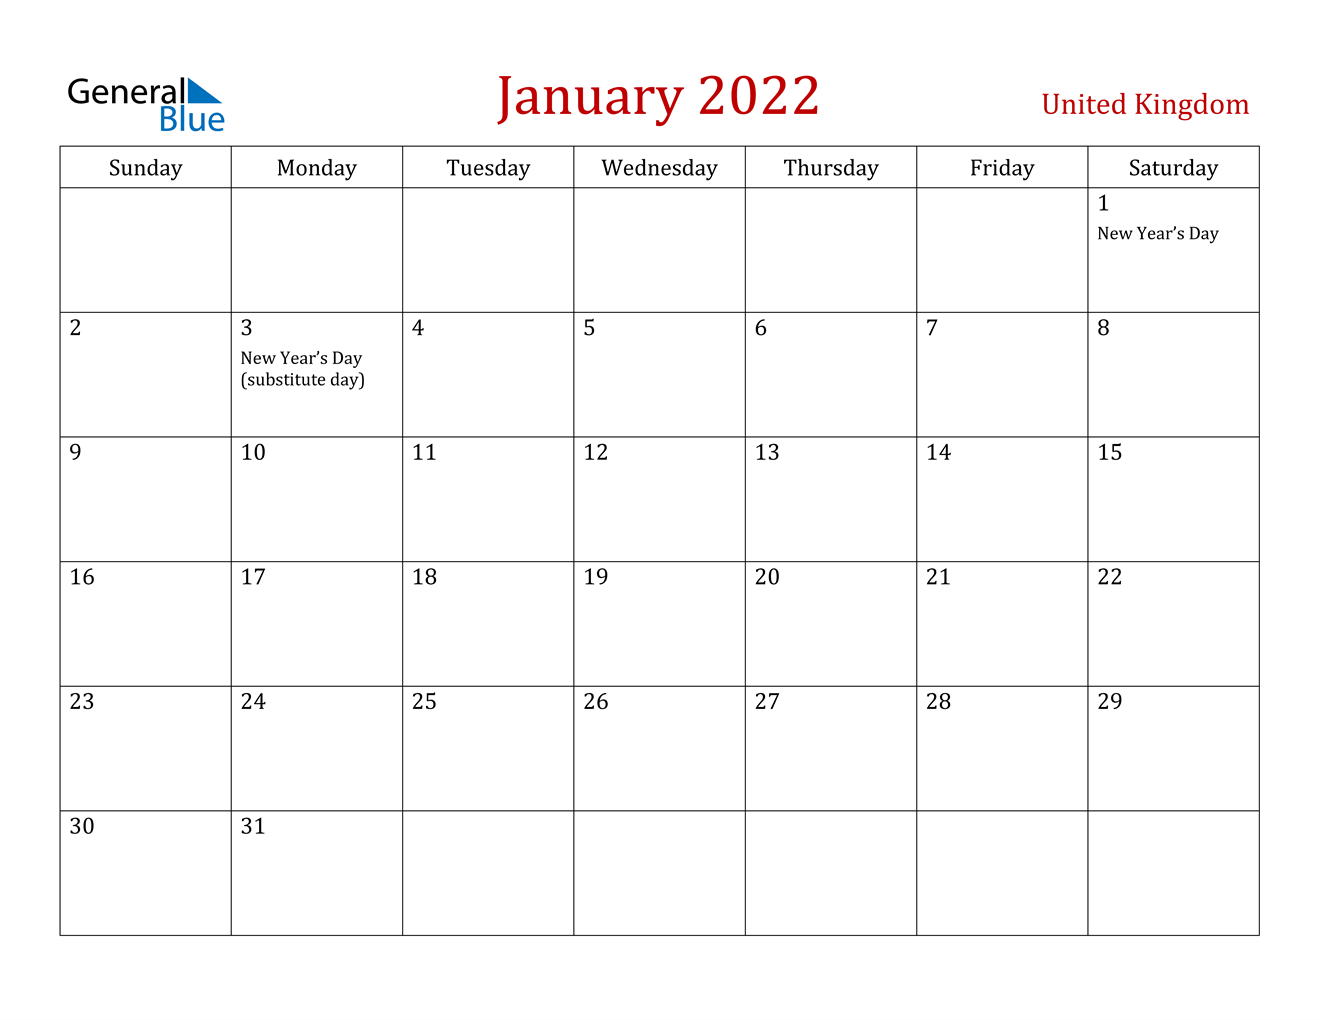 January 2022 Calendar - United Kingdom  Scps 2022 To 2022 Calendar